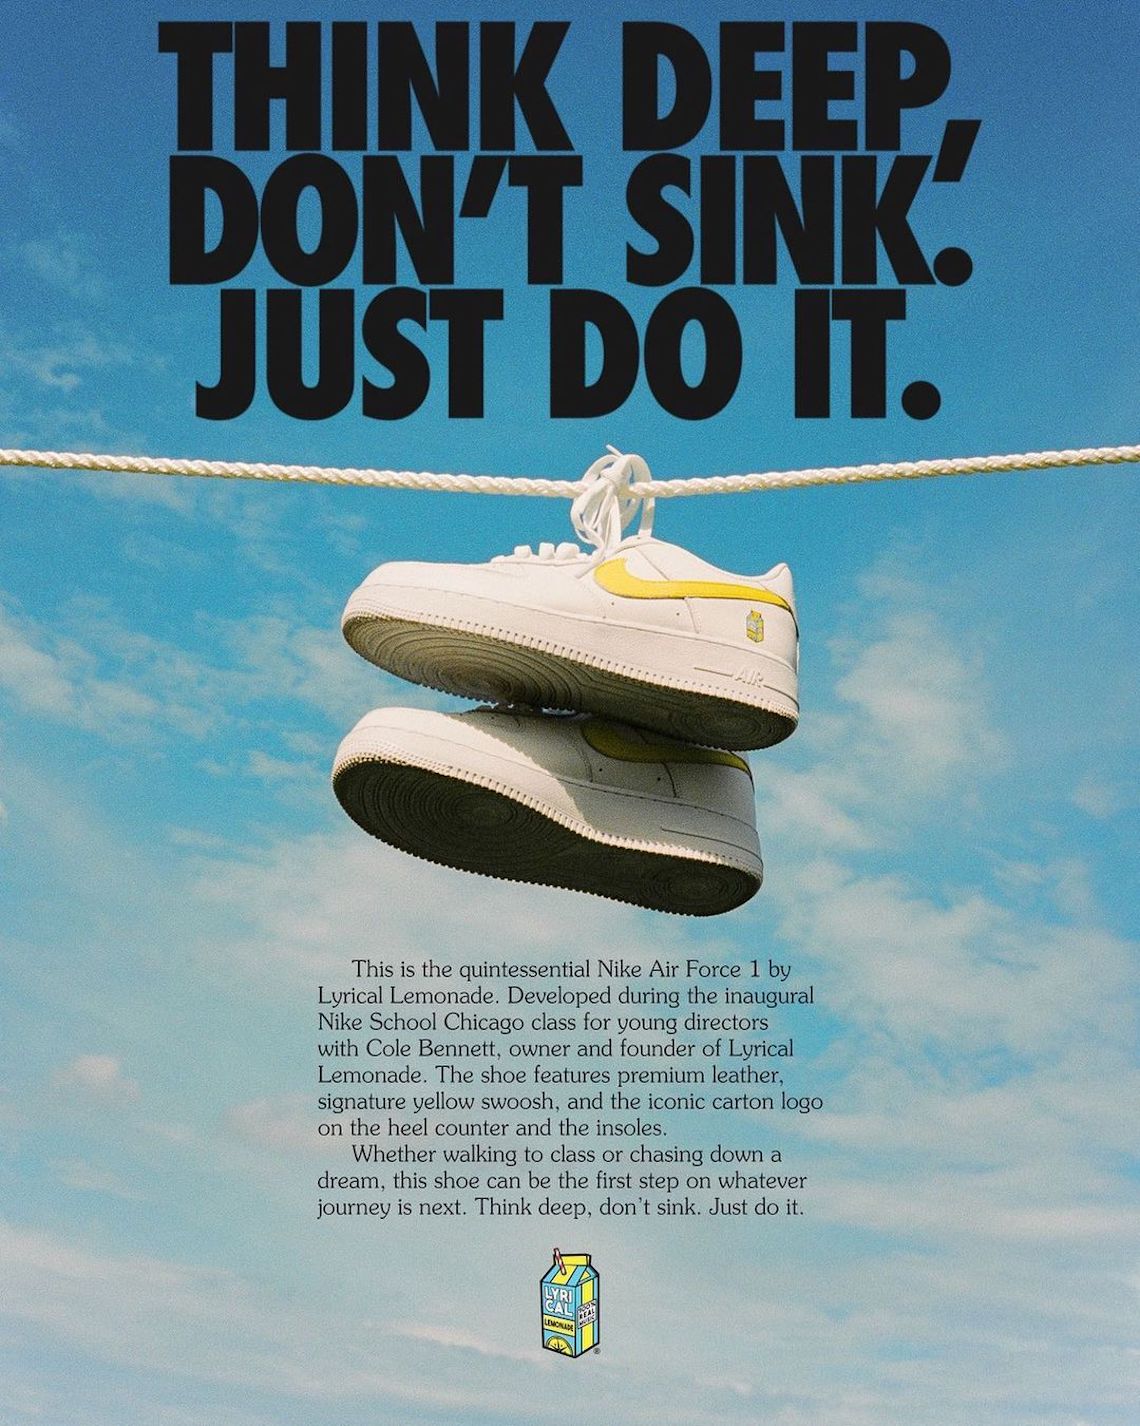 Lyrical Lemonade air force 1 swoosh x Nike Air Force 1 | SneakerNews.com